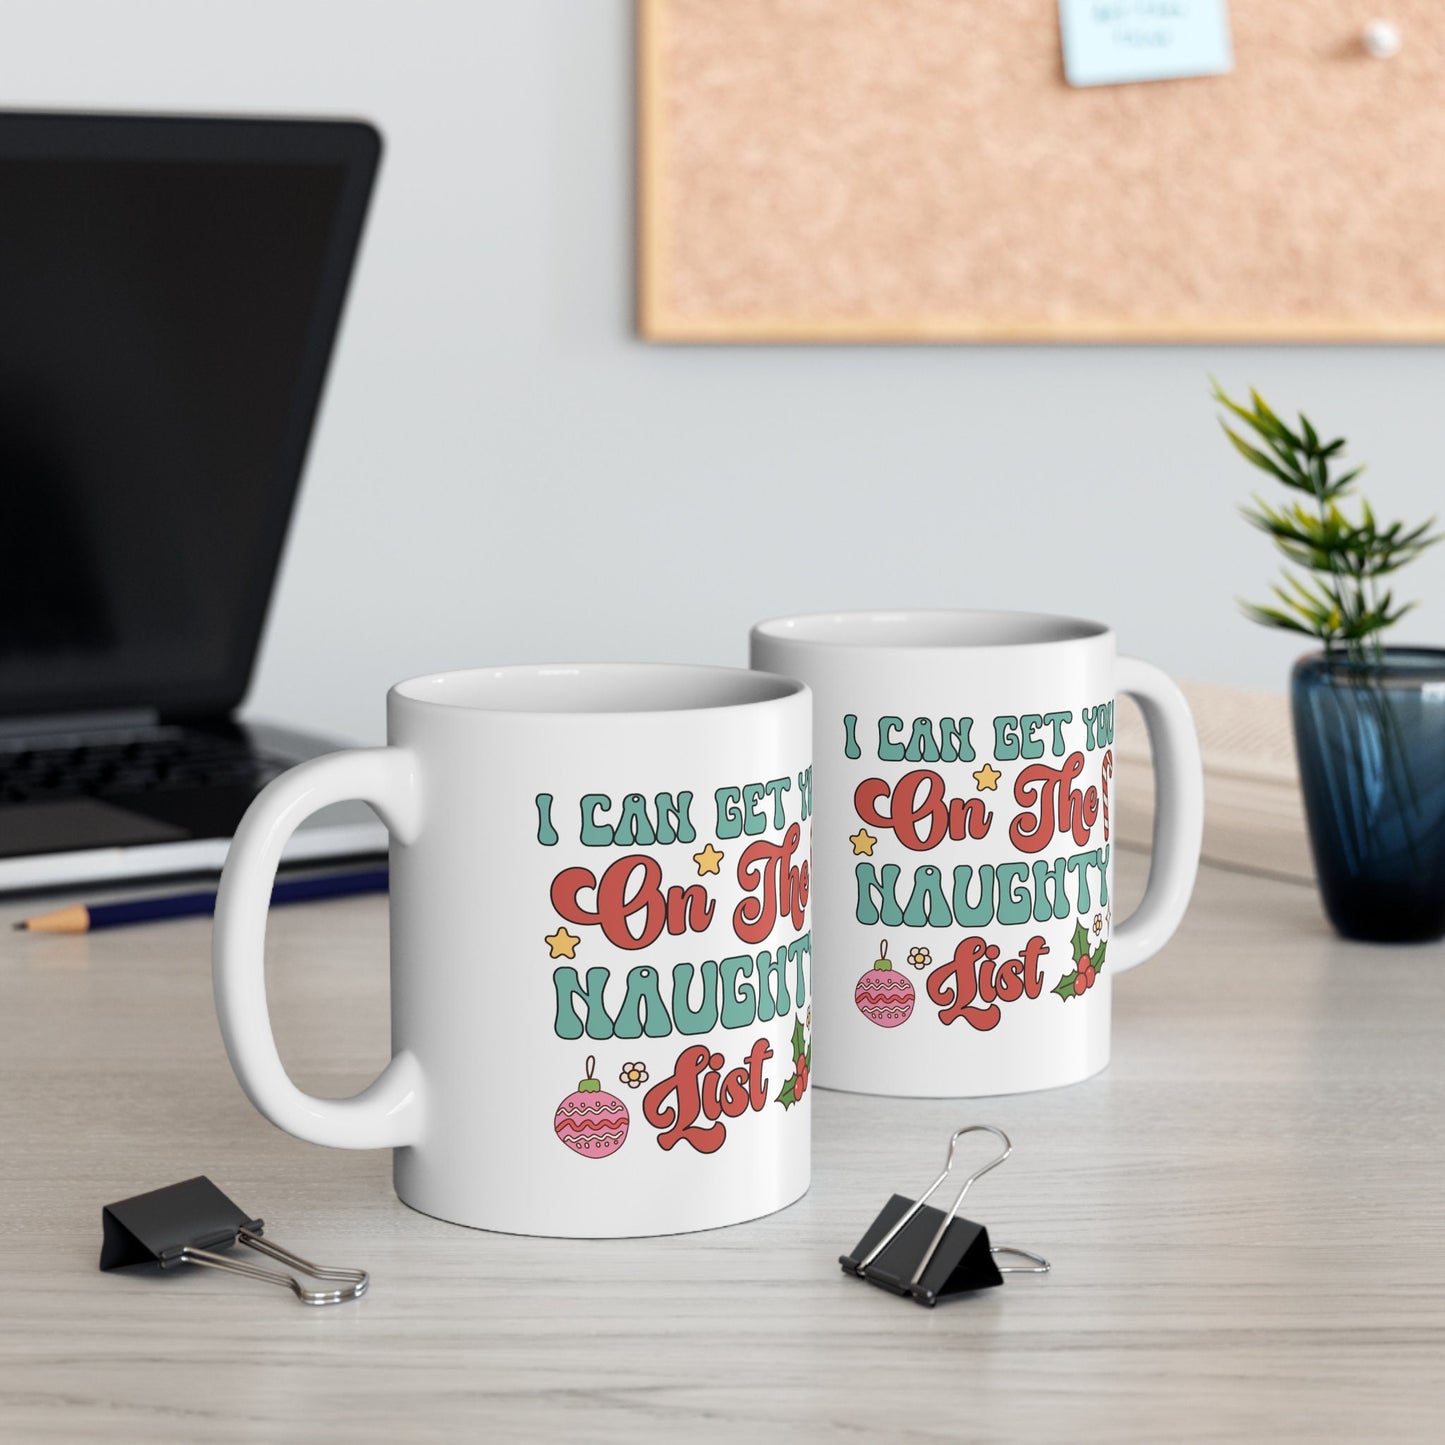 I Can Get You On The Naughty List Mug, Perfect Holiday Cheer Coffee Mug, Gift Mug for Christmas Spirit, Cute Mug for Family and friends